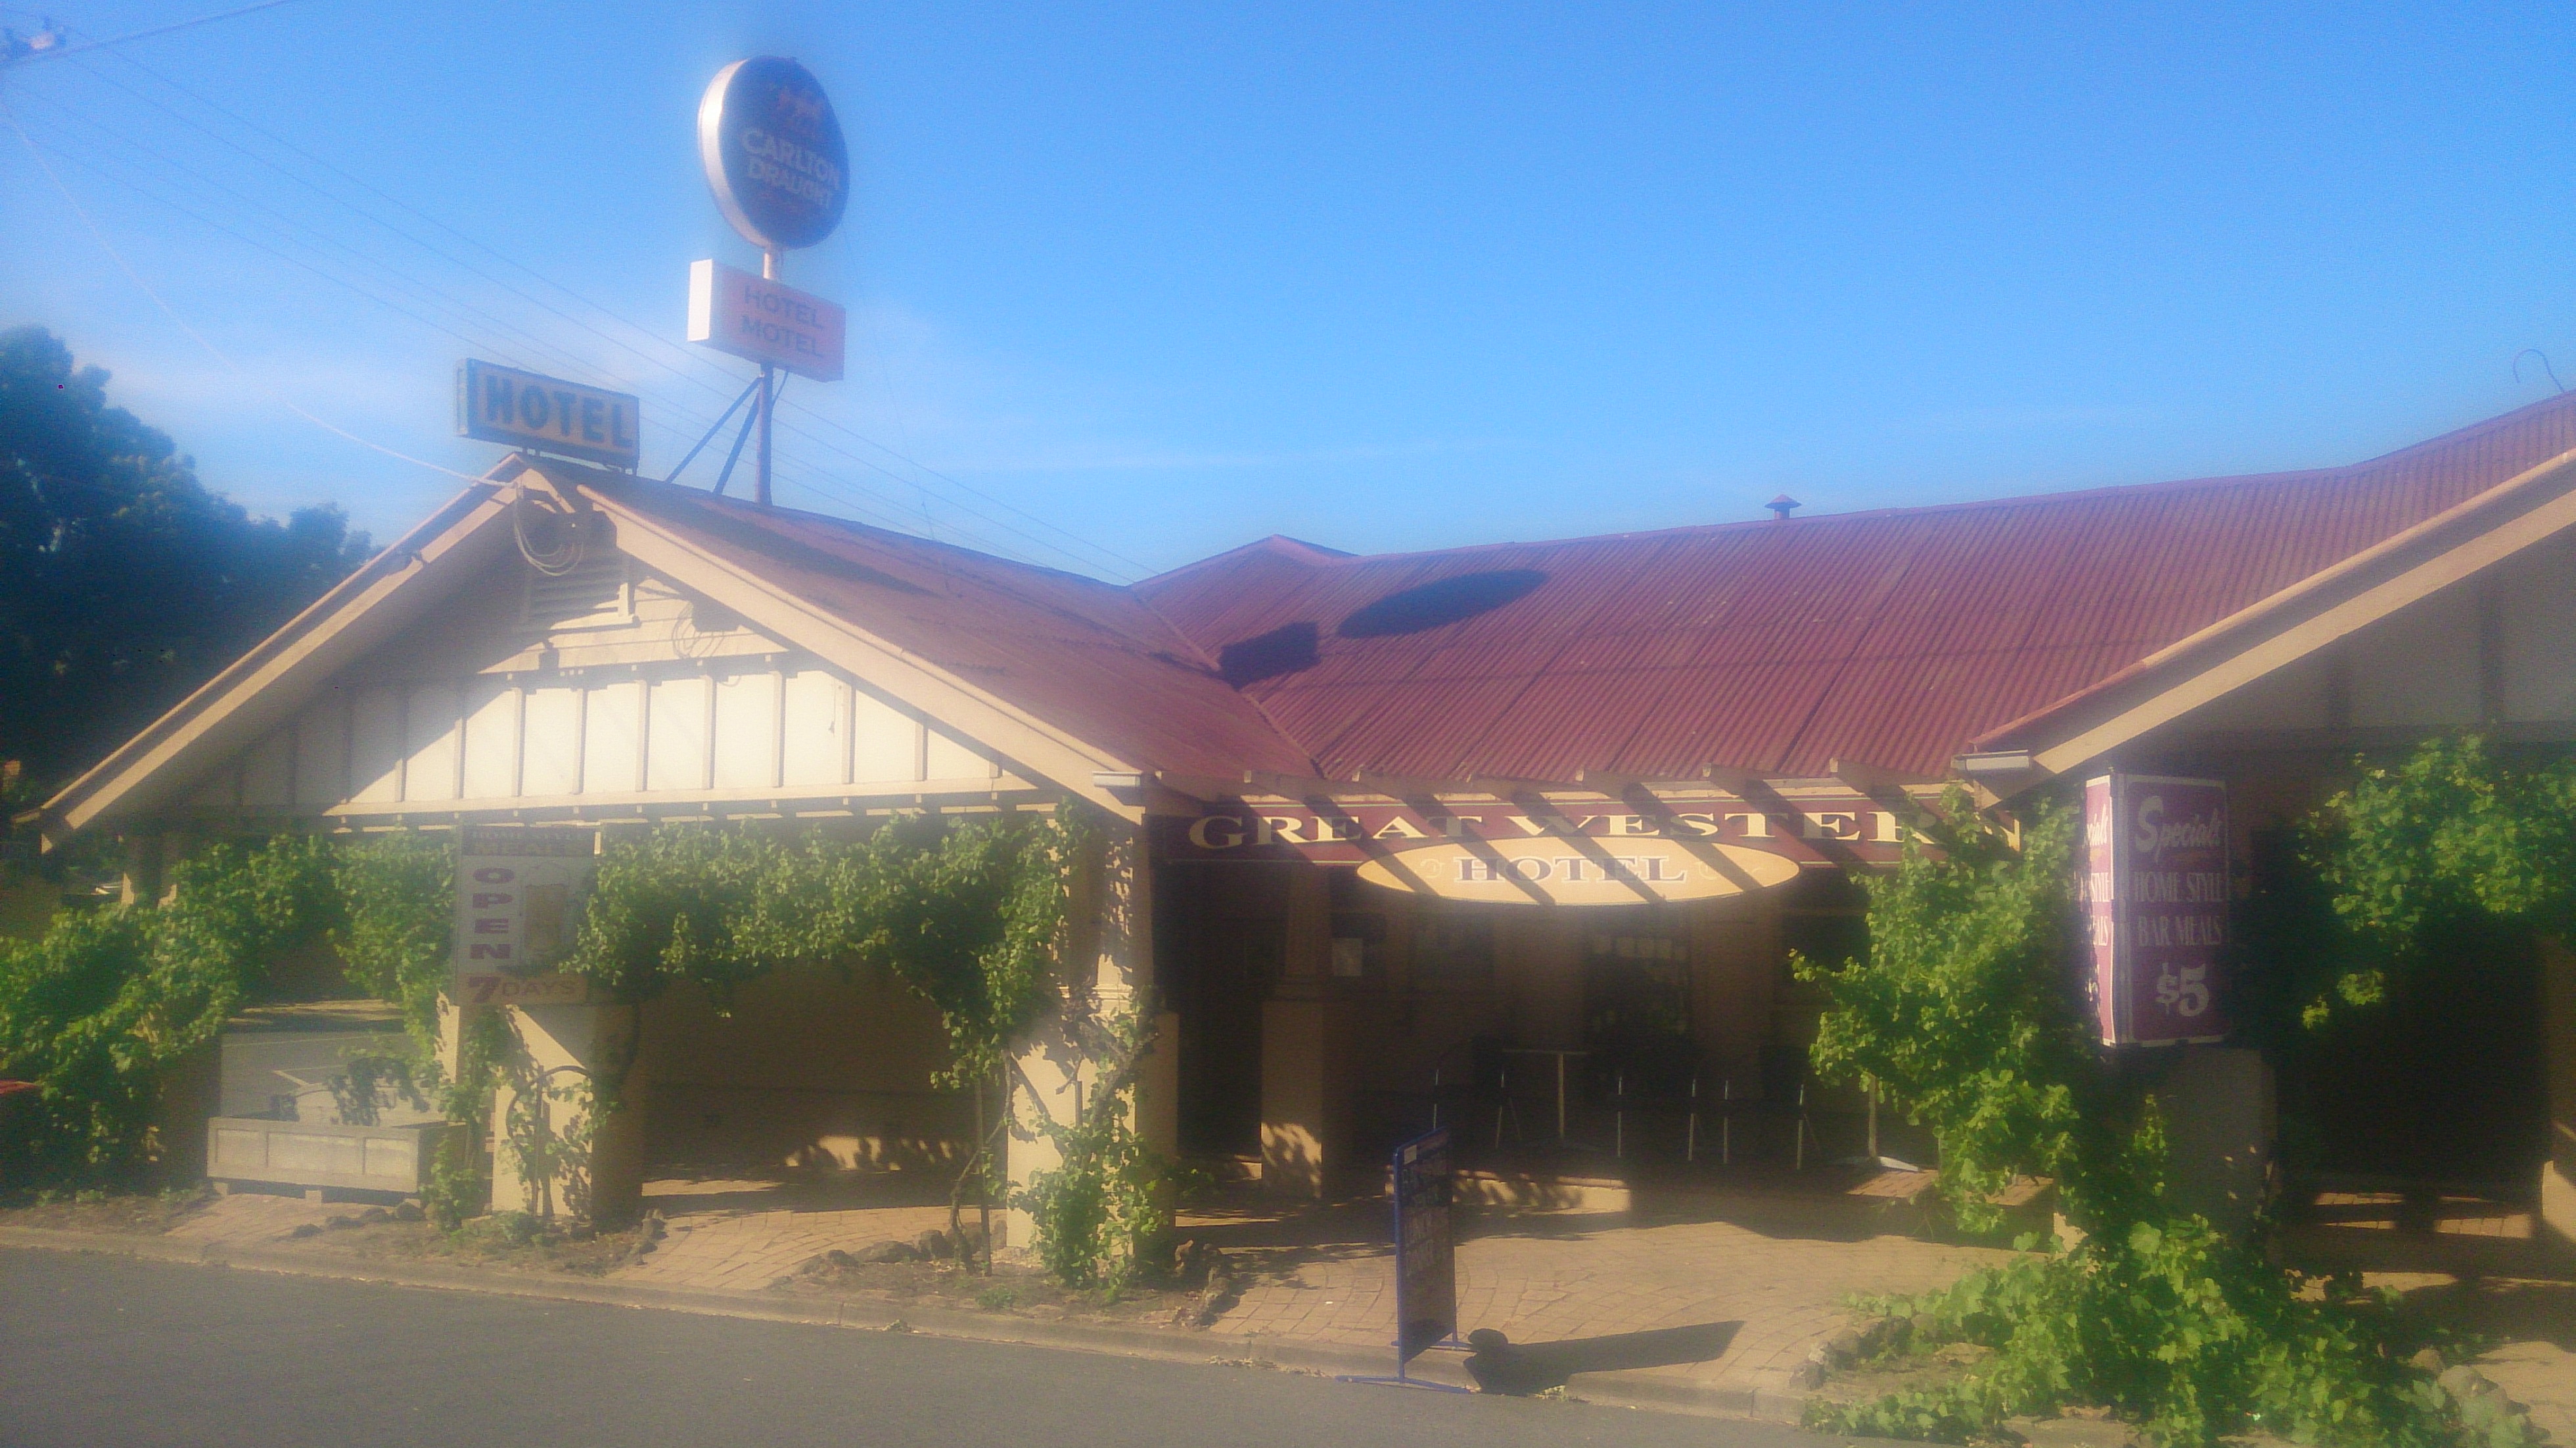 Great Western Hotel Motel - Accommodation Yamba